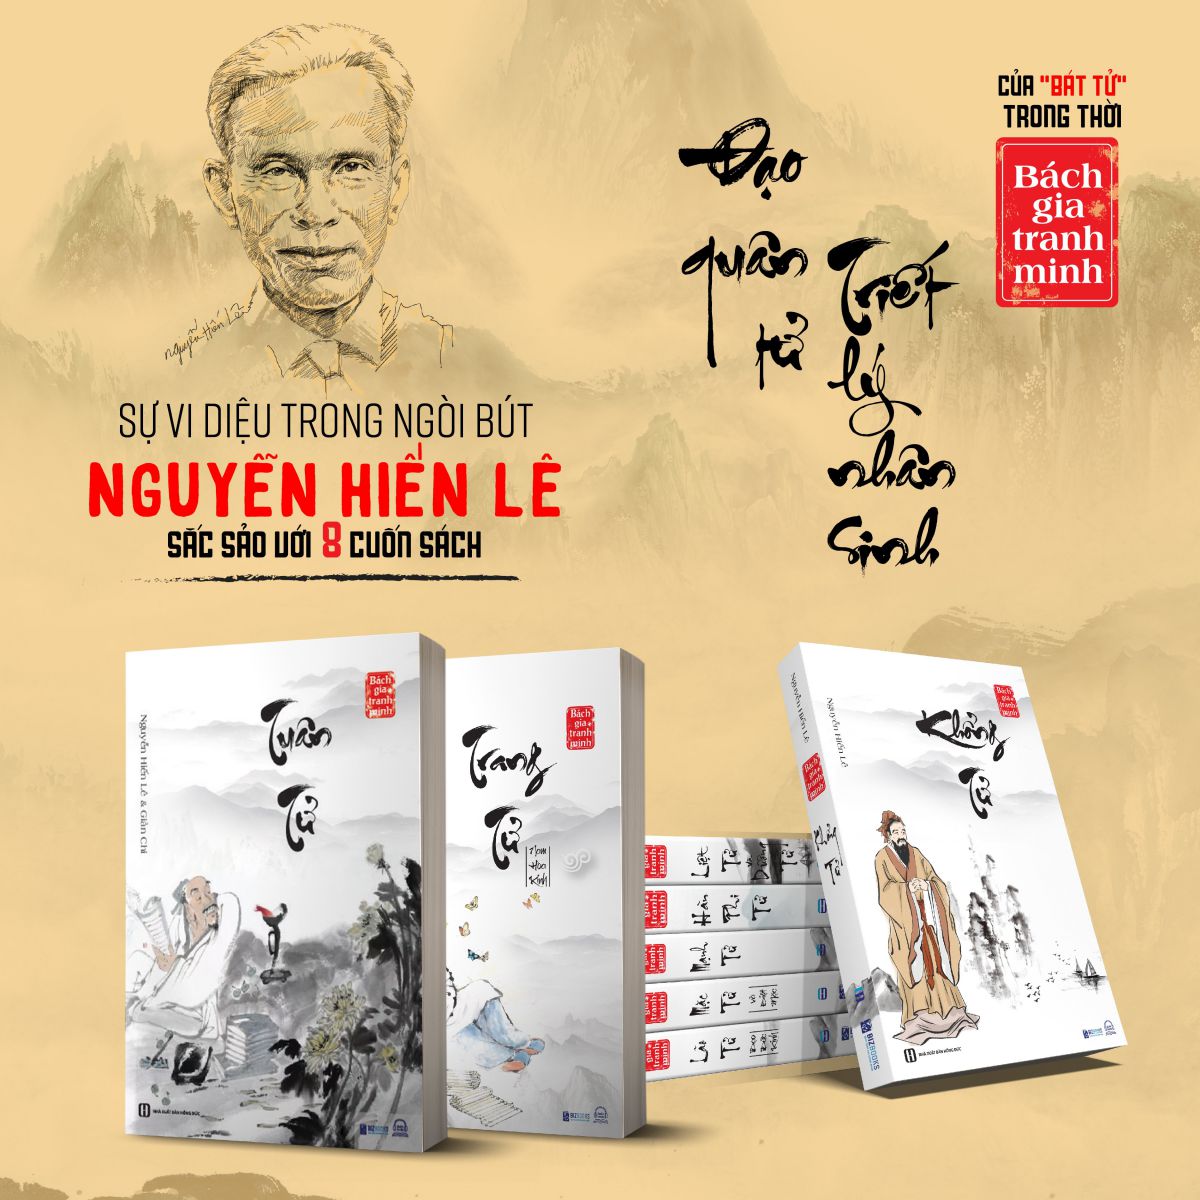 Bách  gia tranh minh - Bộ 8 cuốn sách quý hiếm của Nguyễn Hiến Lê